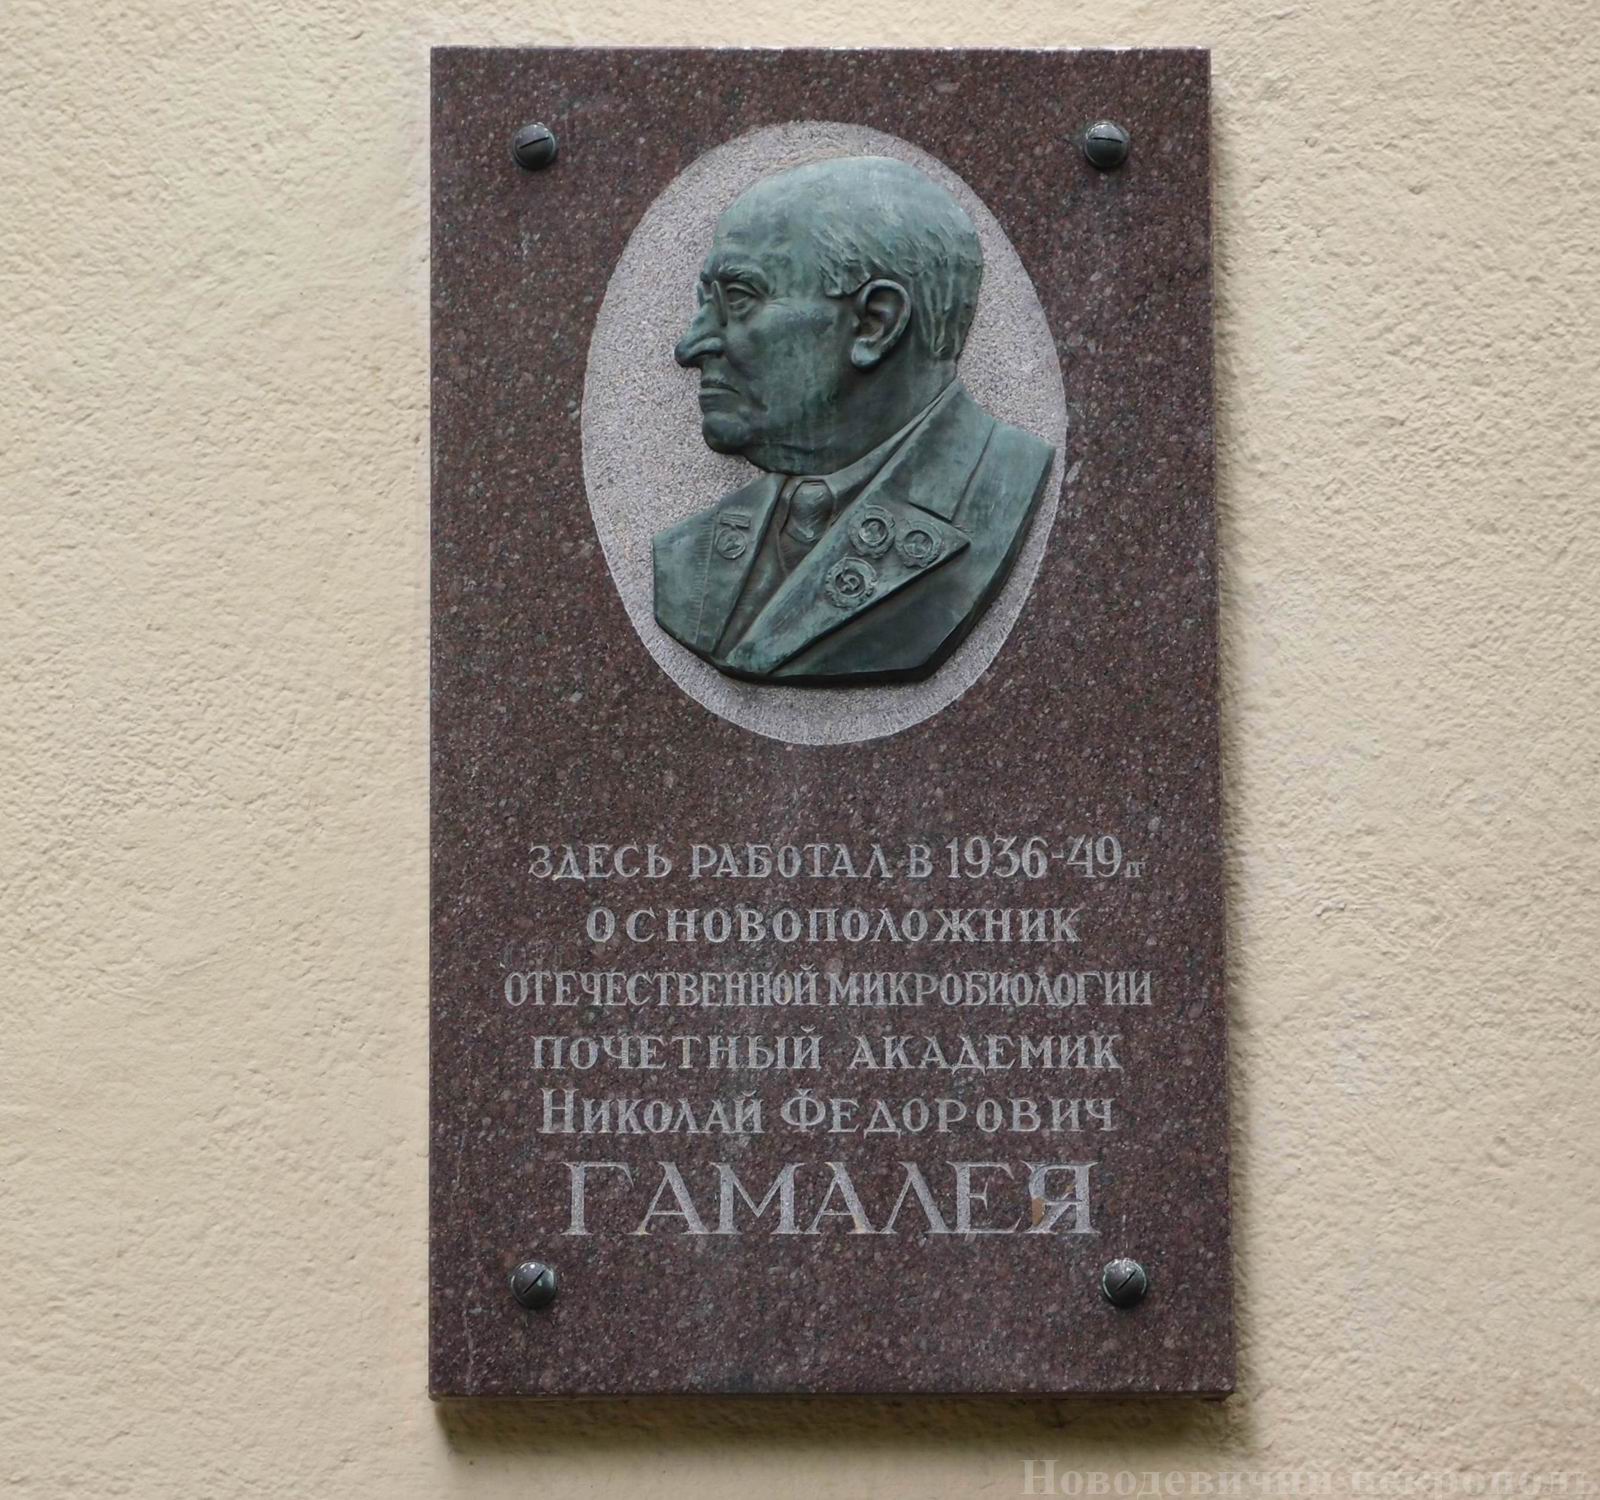 Мемориальная доска Гамалея Н.Ф. (1859–1949), ск. В.М.Терзибашьян, на улице Гамалеи, дом 18.